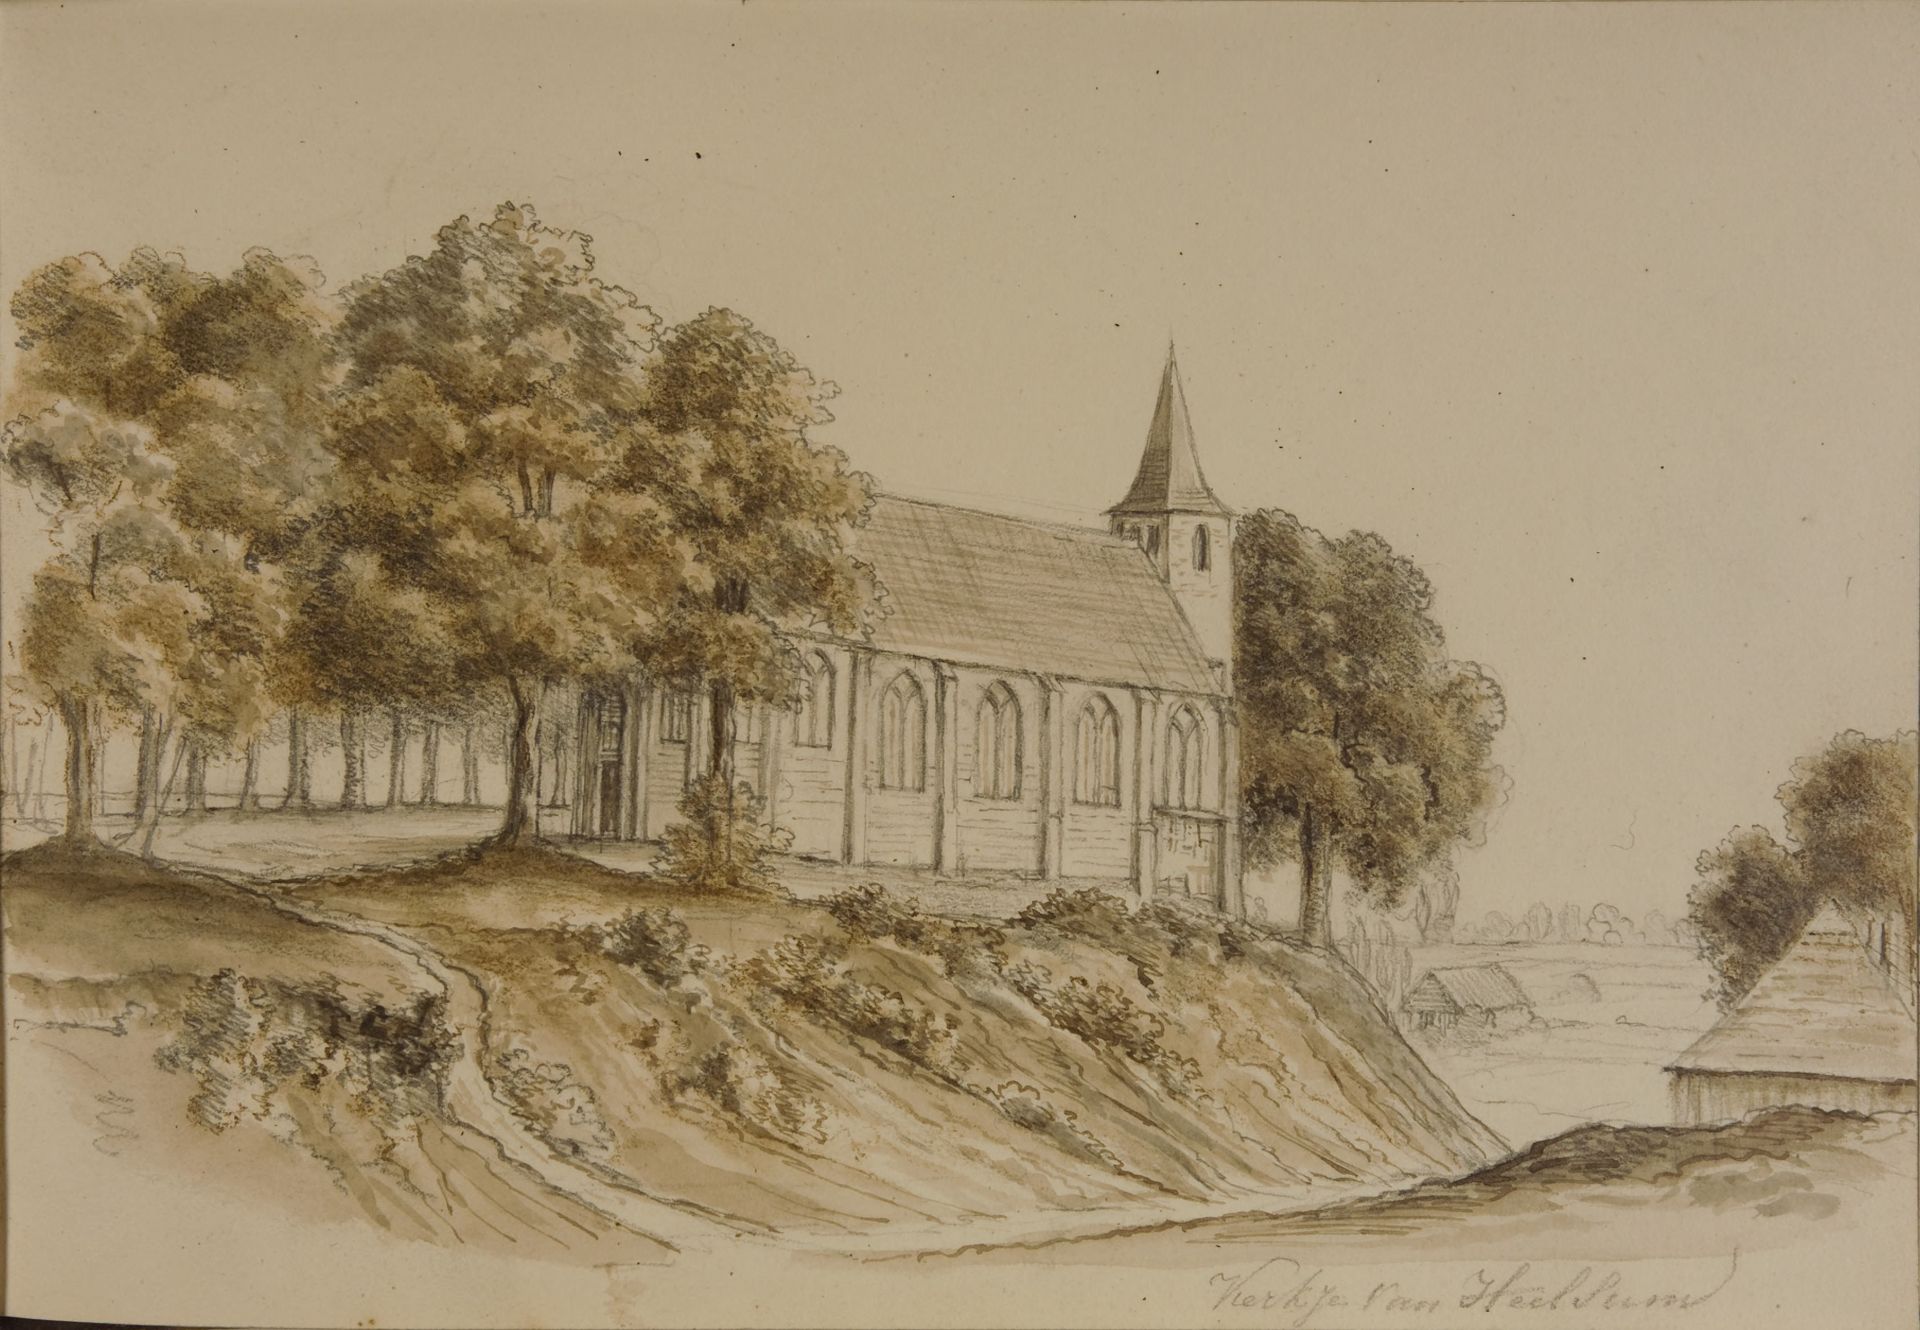 Tekening van het kerkje van Heelsum door Justine Christine Everts-van Meurs, 1846